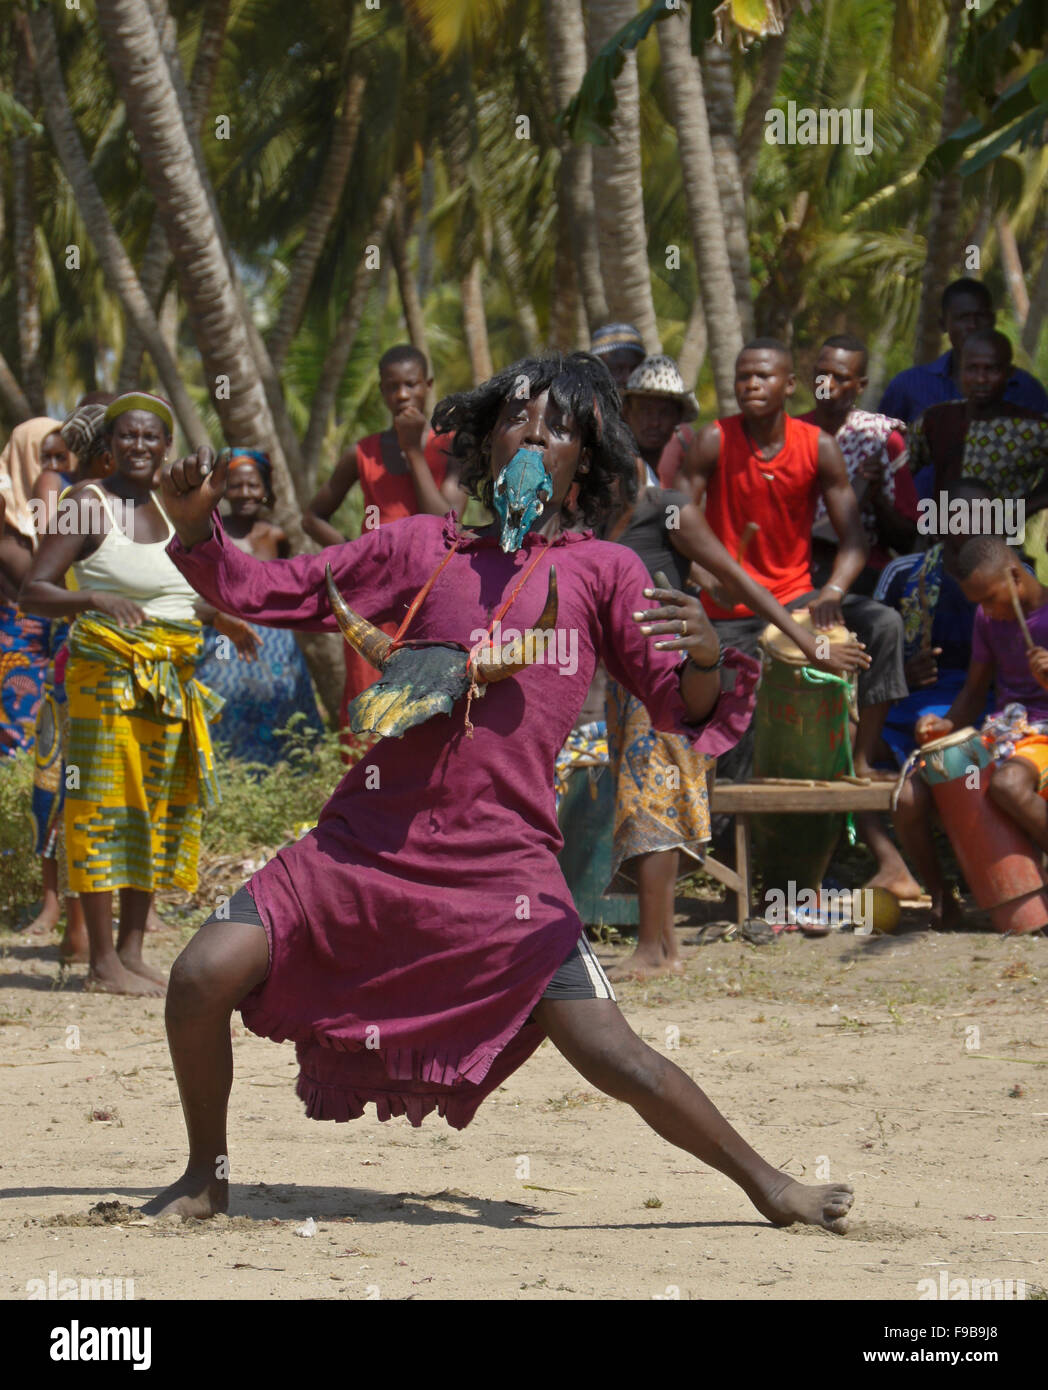 Homme Bewigged dancing au Zangbeto cérémonie dans Heve-Grand village Popo, Bénin Banque D'Images